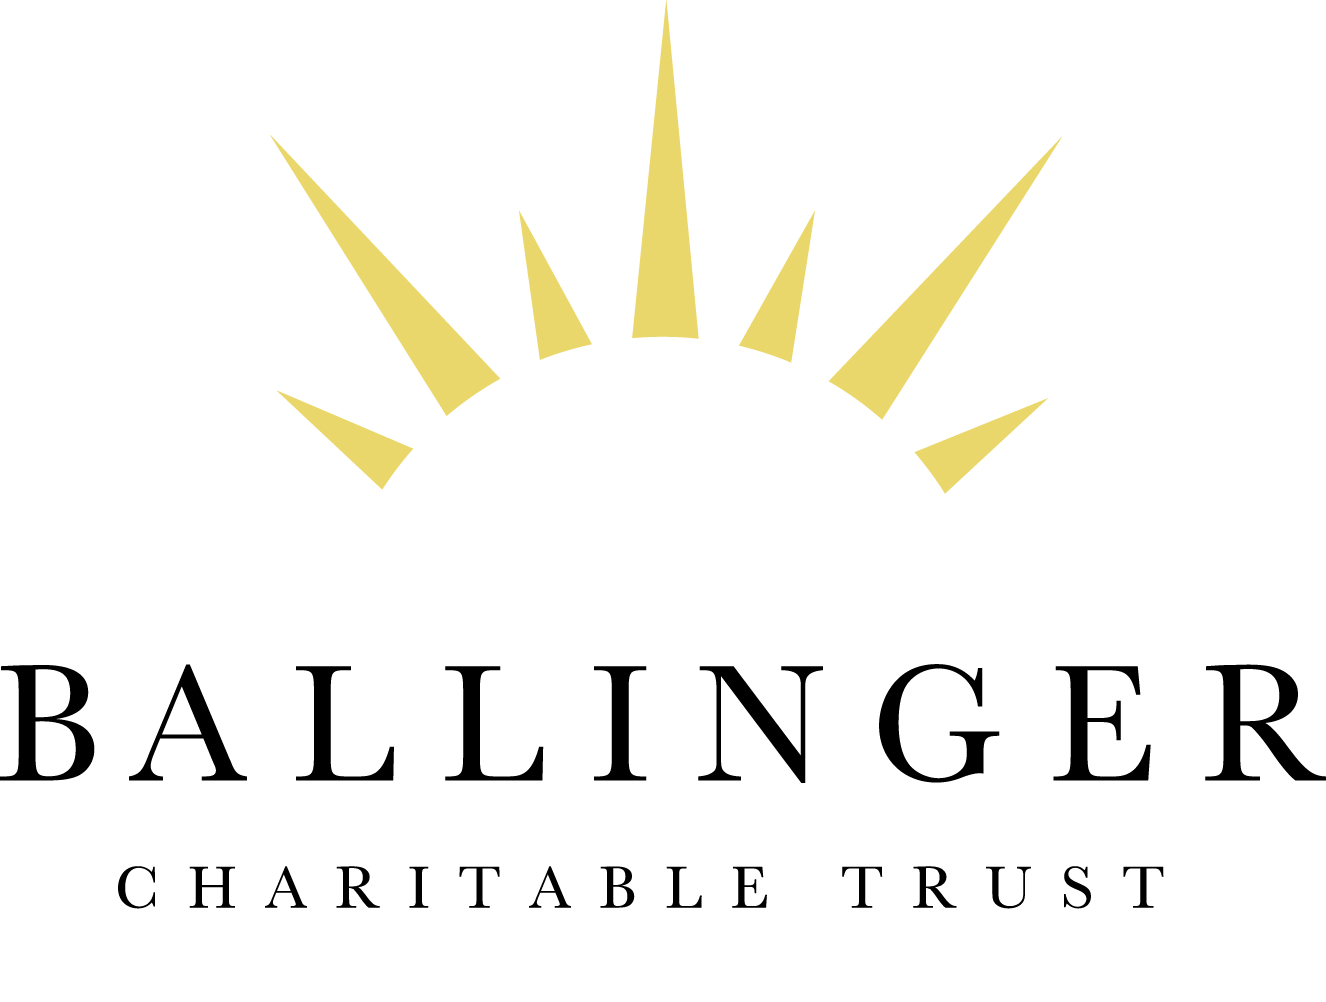 The Ballinger Charitable Trust